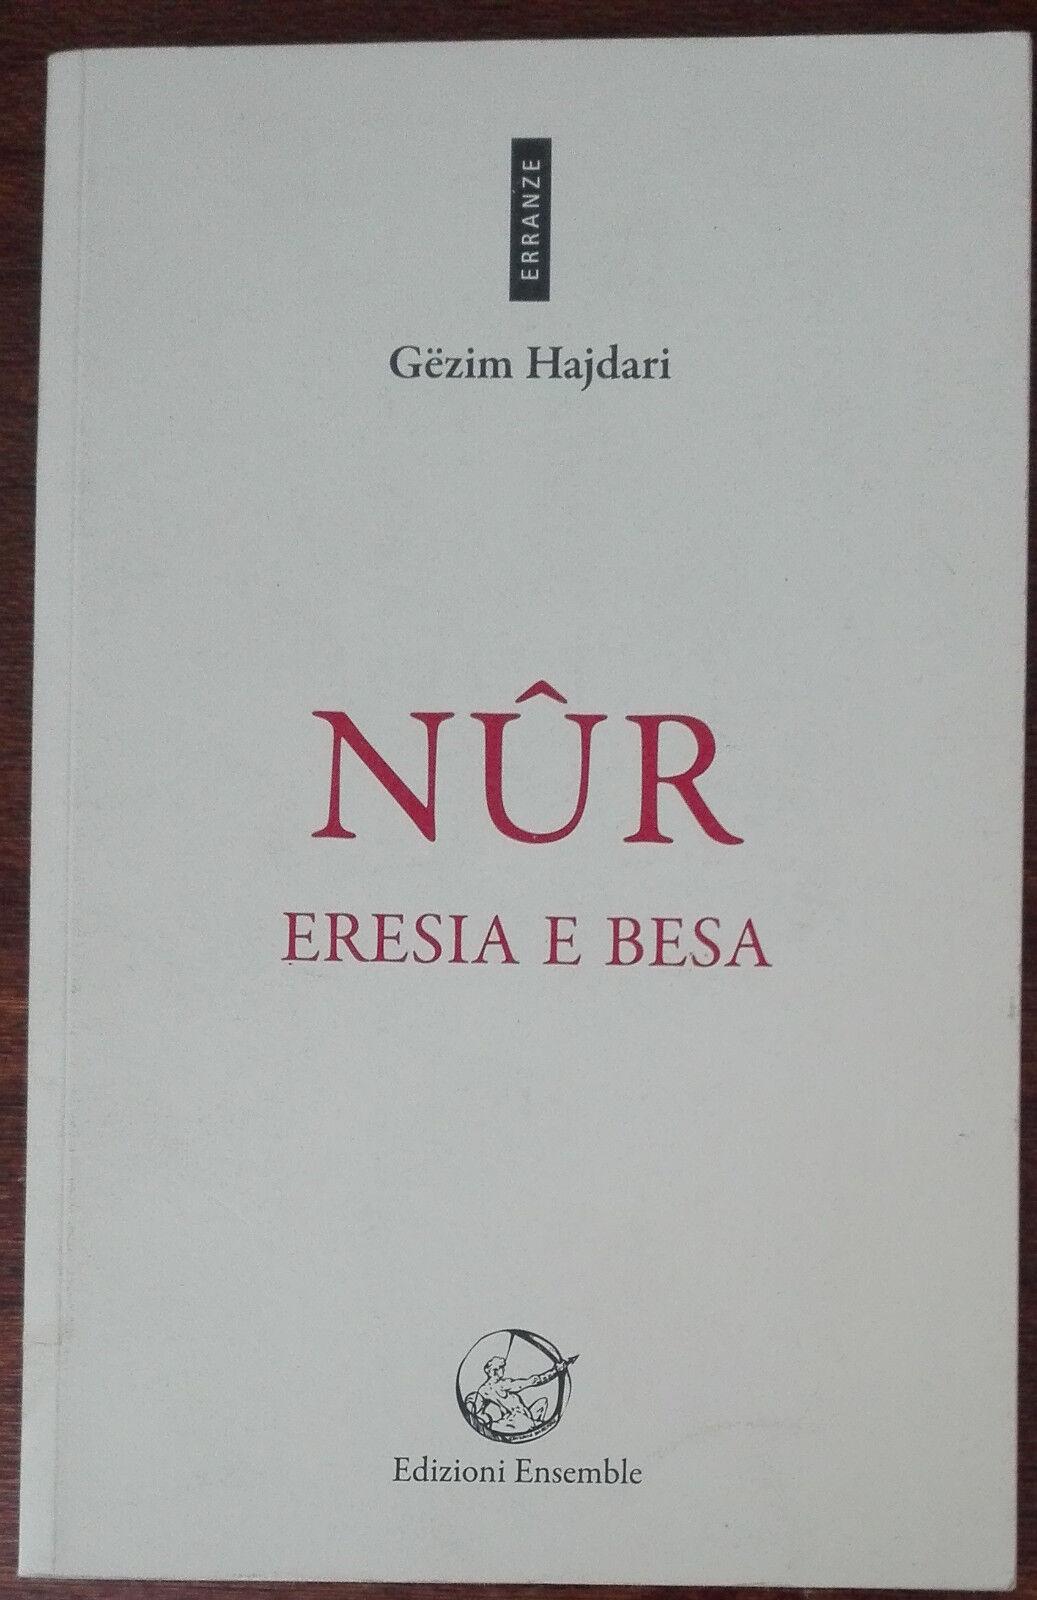 N?r. Eresia e besa - G?zim Hajdari - Ensemble,2012 - A